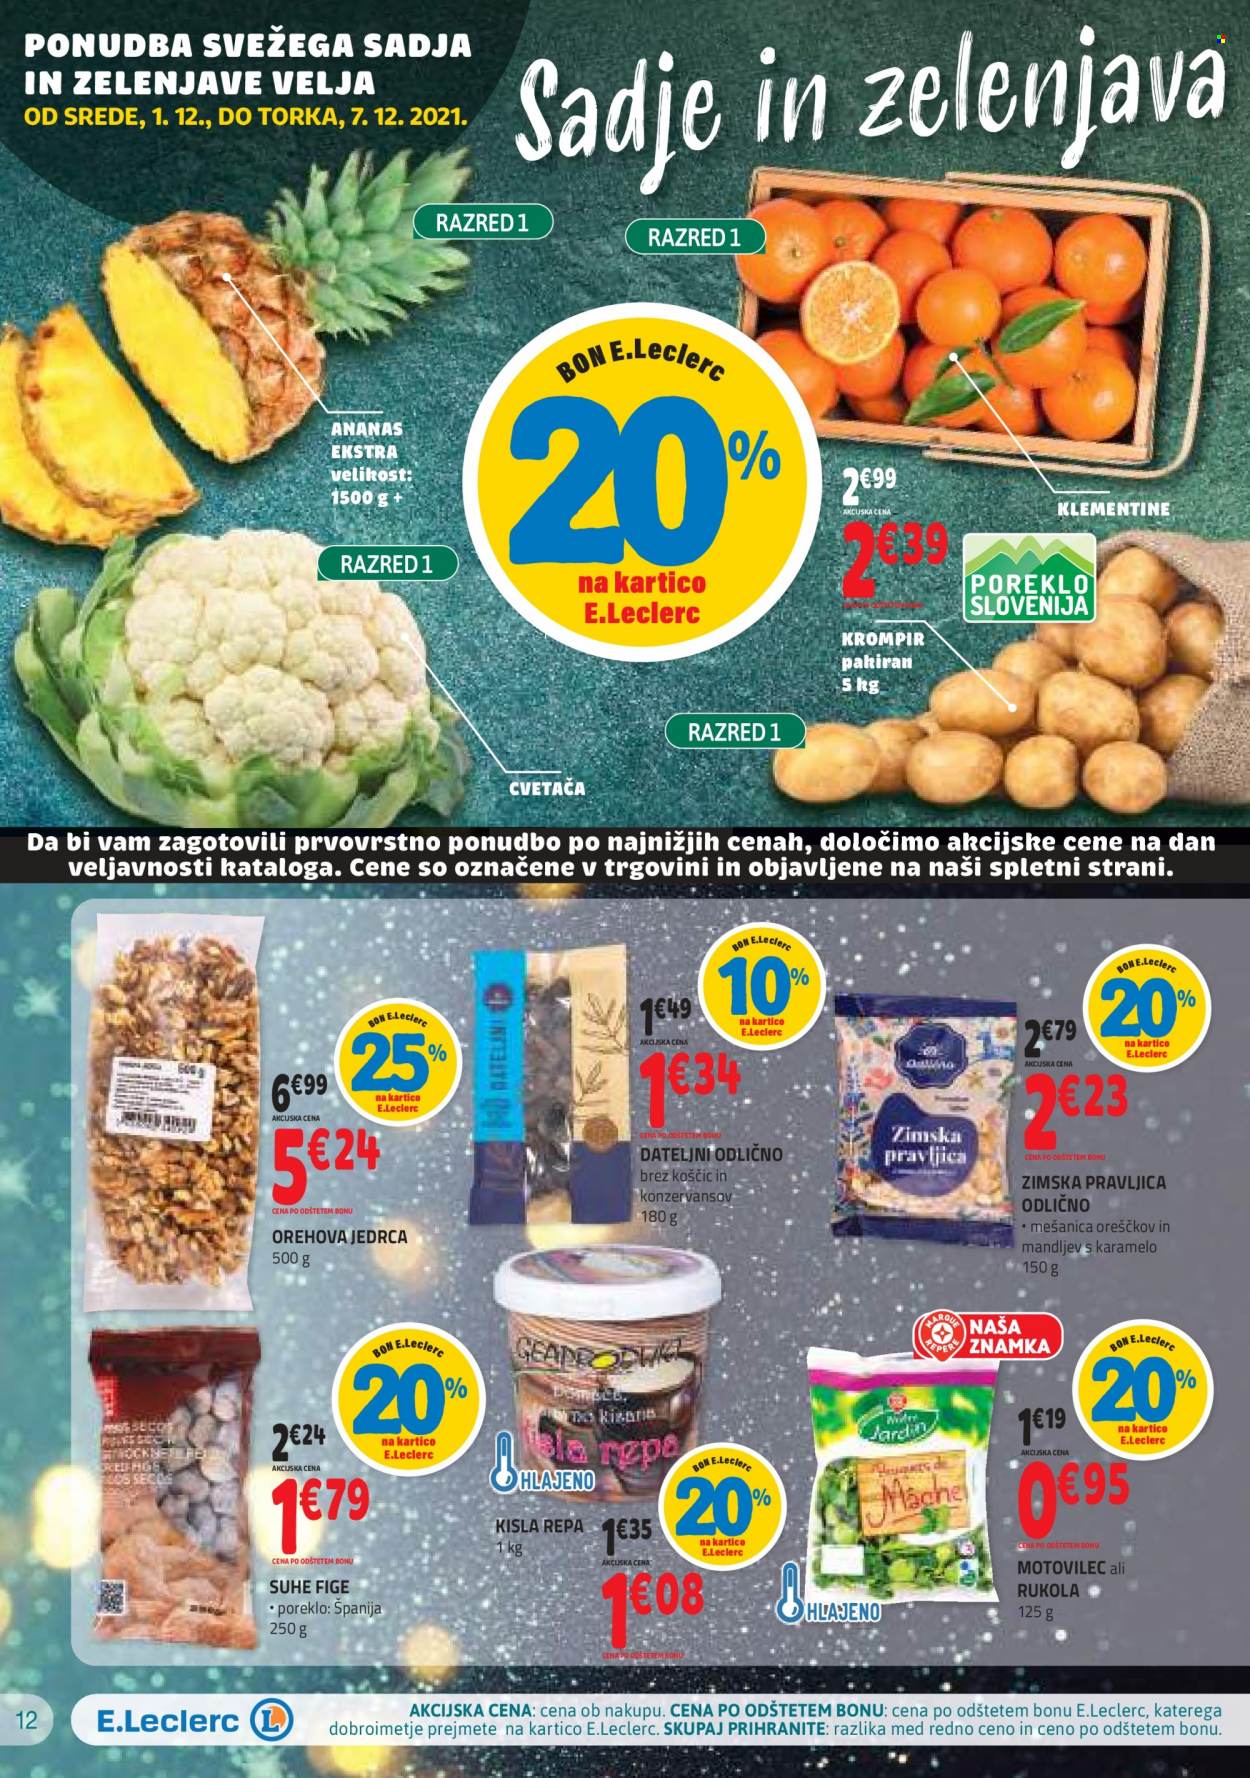 thumbnail - E.Leclerc katalog - 1.12.2021 - 11.12.2021 - Ponudba izdelkov - ananas, fige, krompir, dateljni, orehova jedrca, suhe fige. Stran 12.